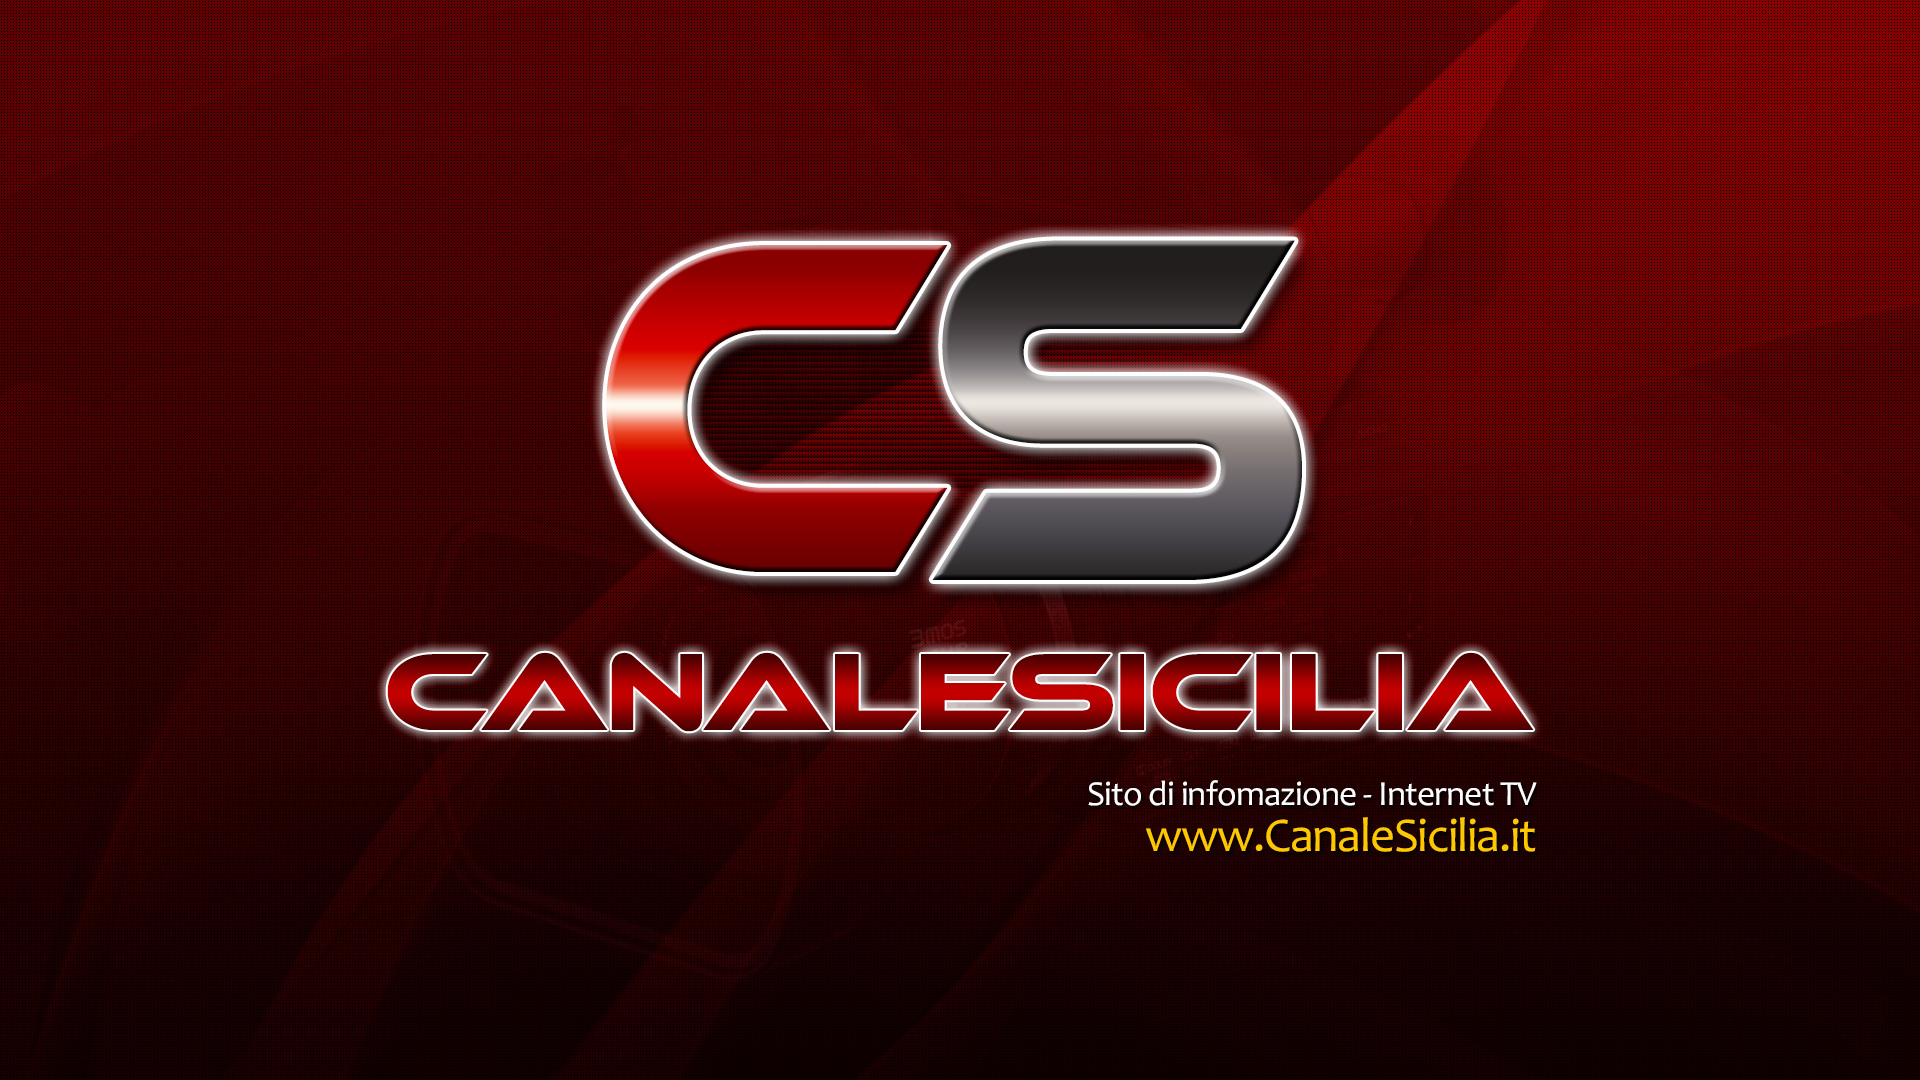 (c) Canalesicilia.it